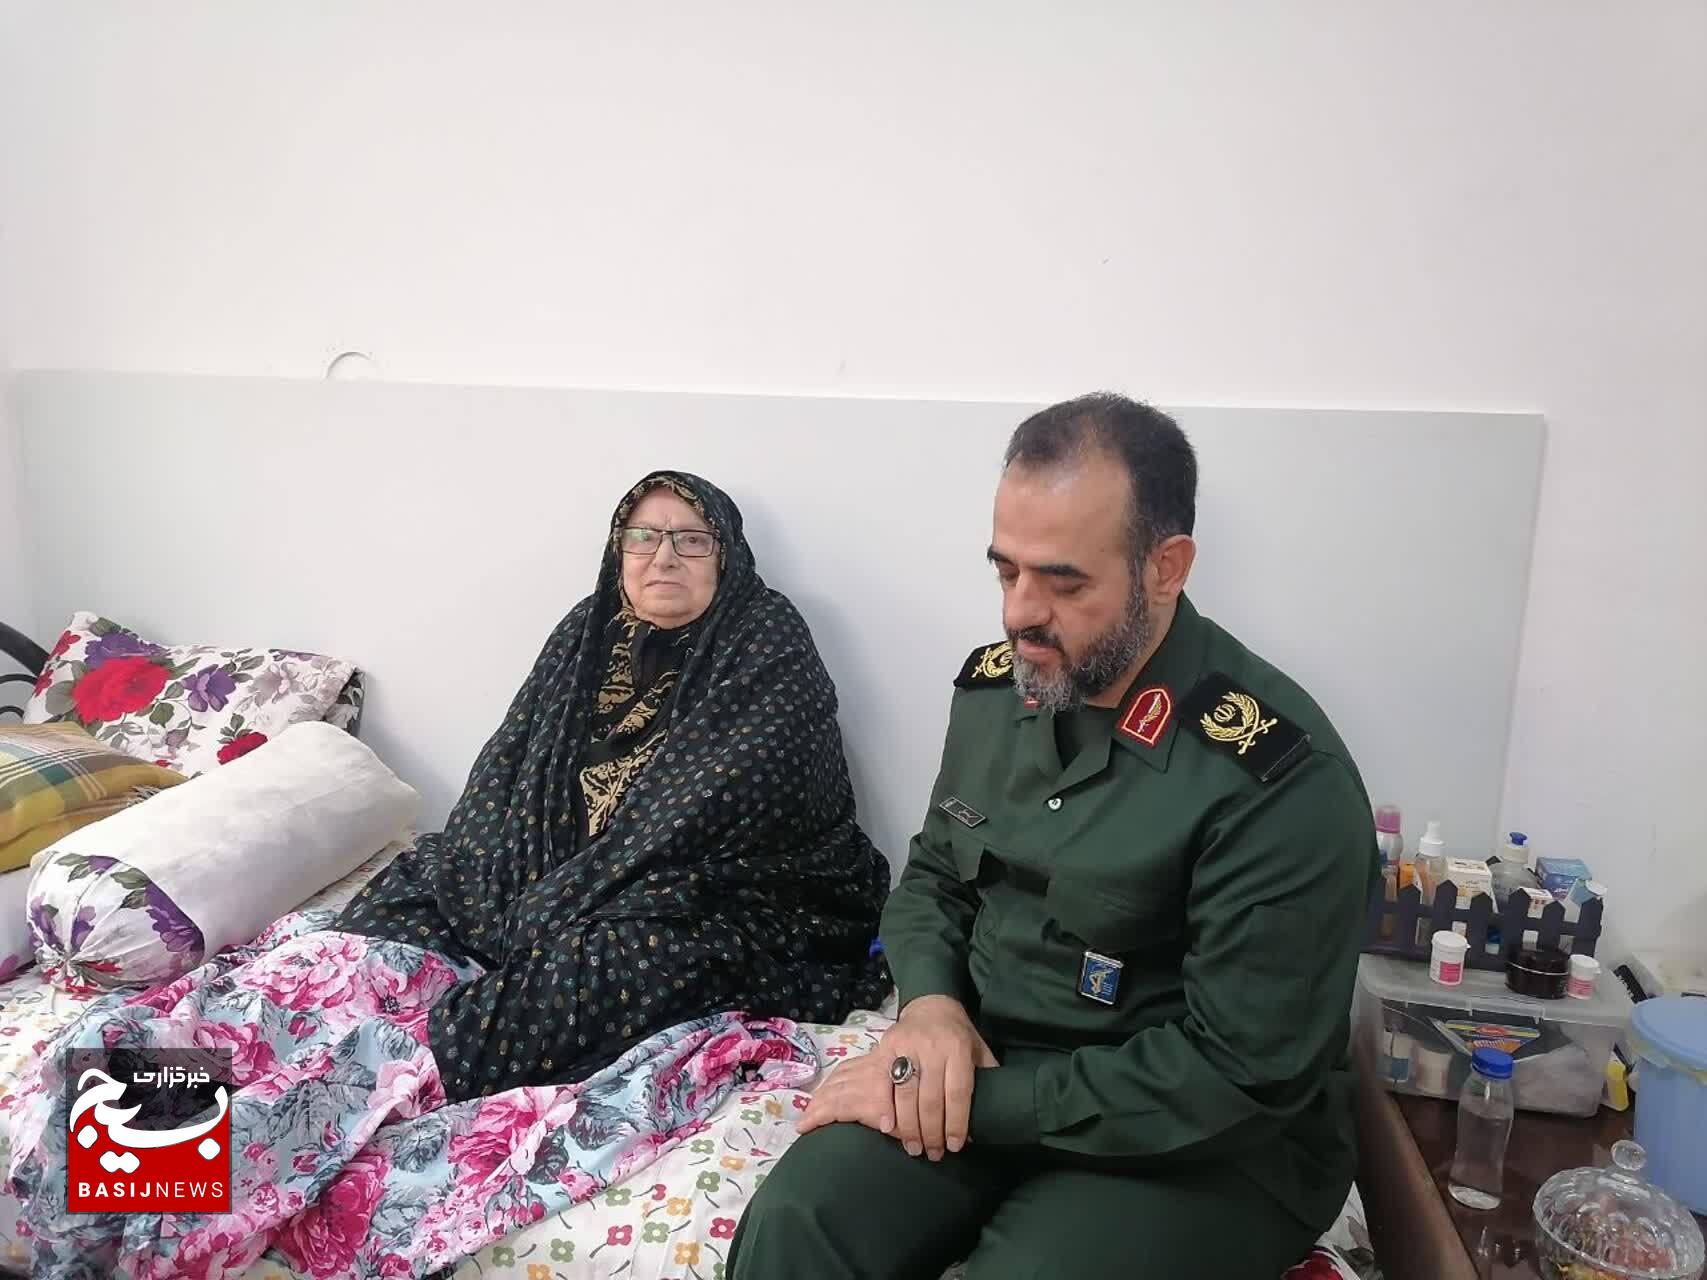 دیدار با مادران ۲ شهید دفاع مقدس شهیدان رنجبر و آذرزرتشت در آستانه اشرفیه